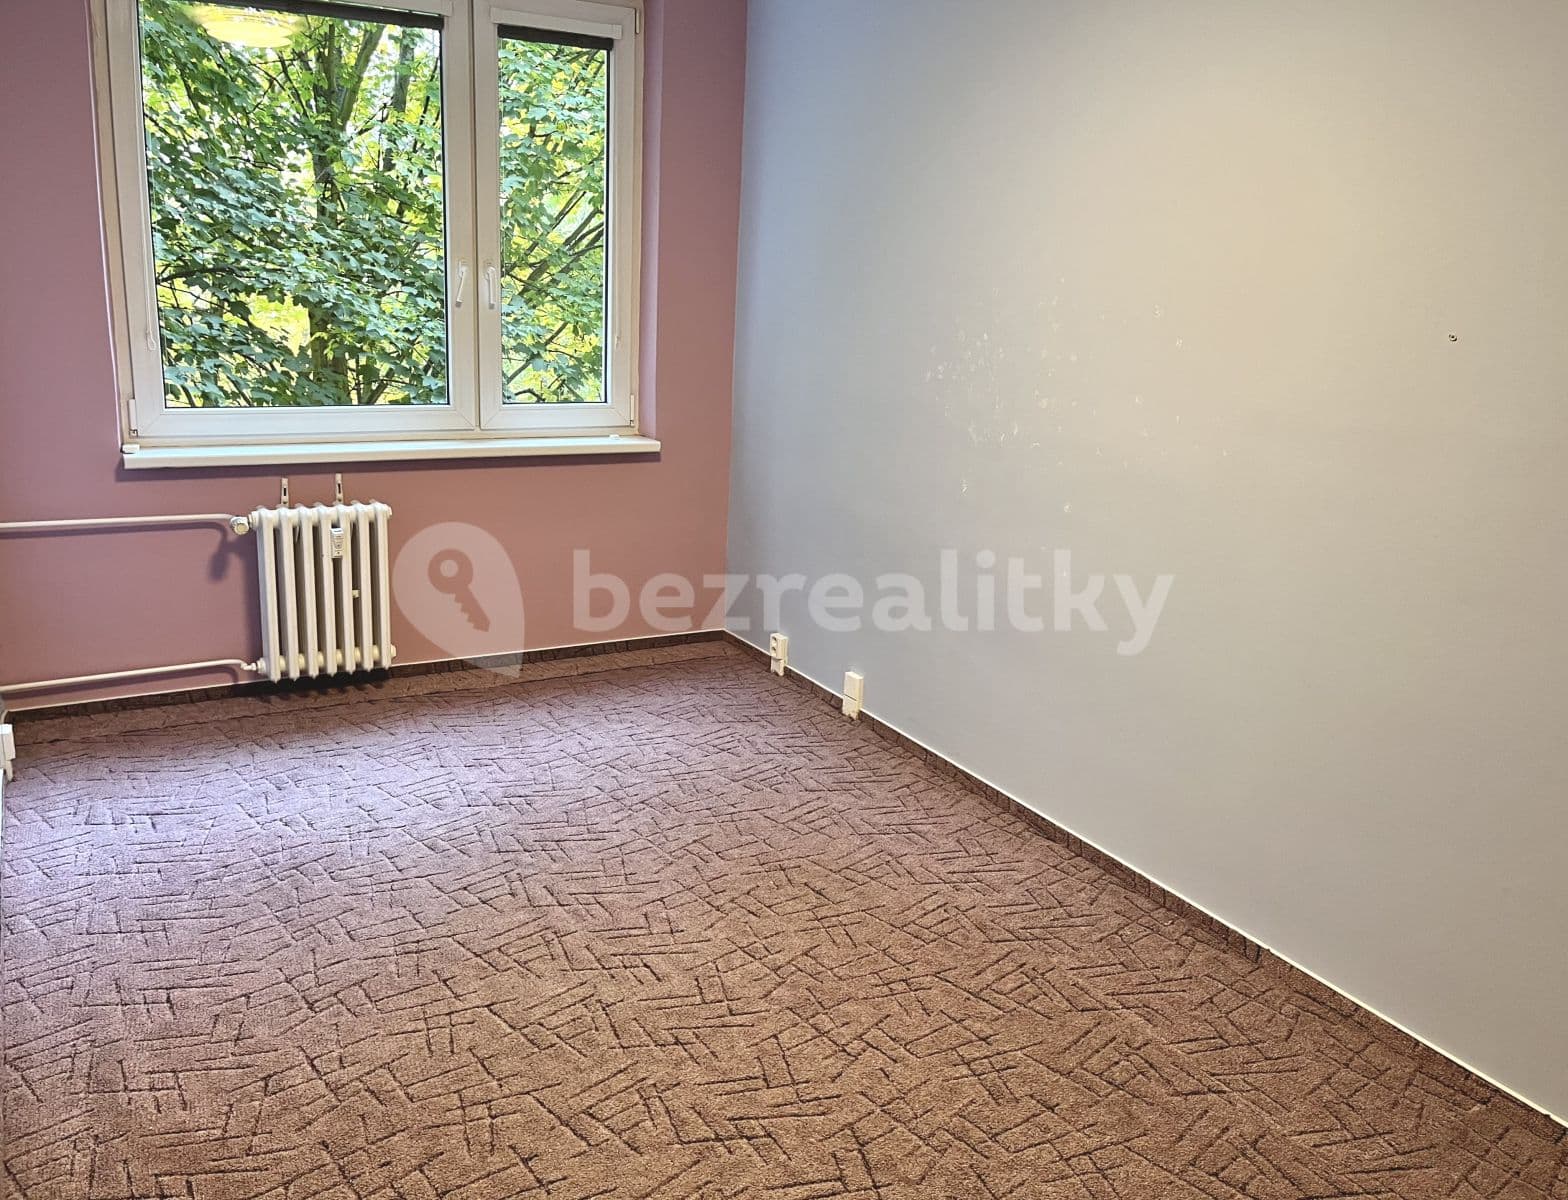 3 bedroom with open-plan kitchen flat to rent, 80 m², Píškova, Prague, Prague